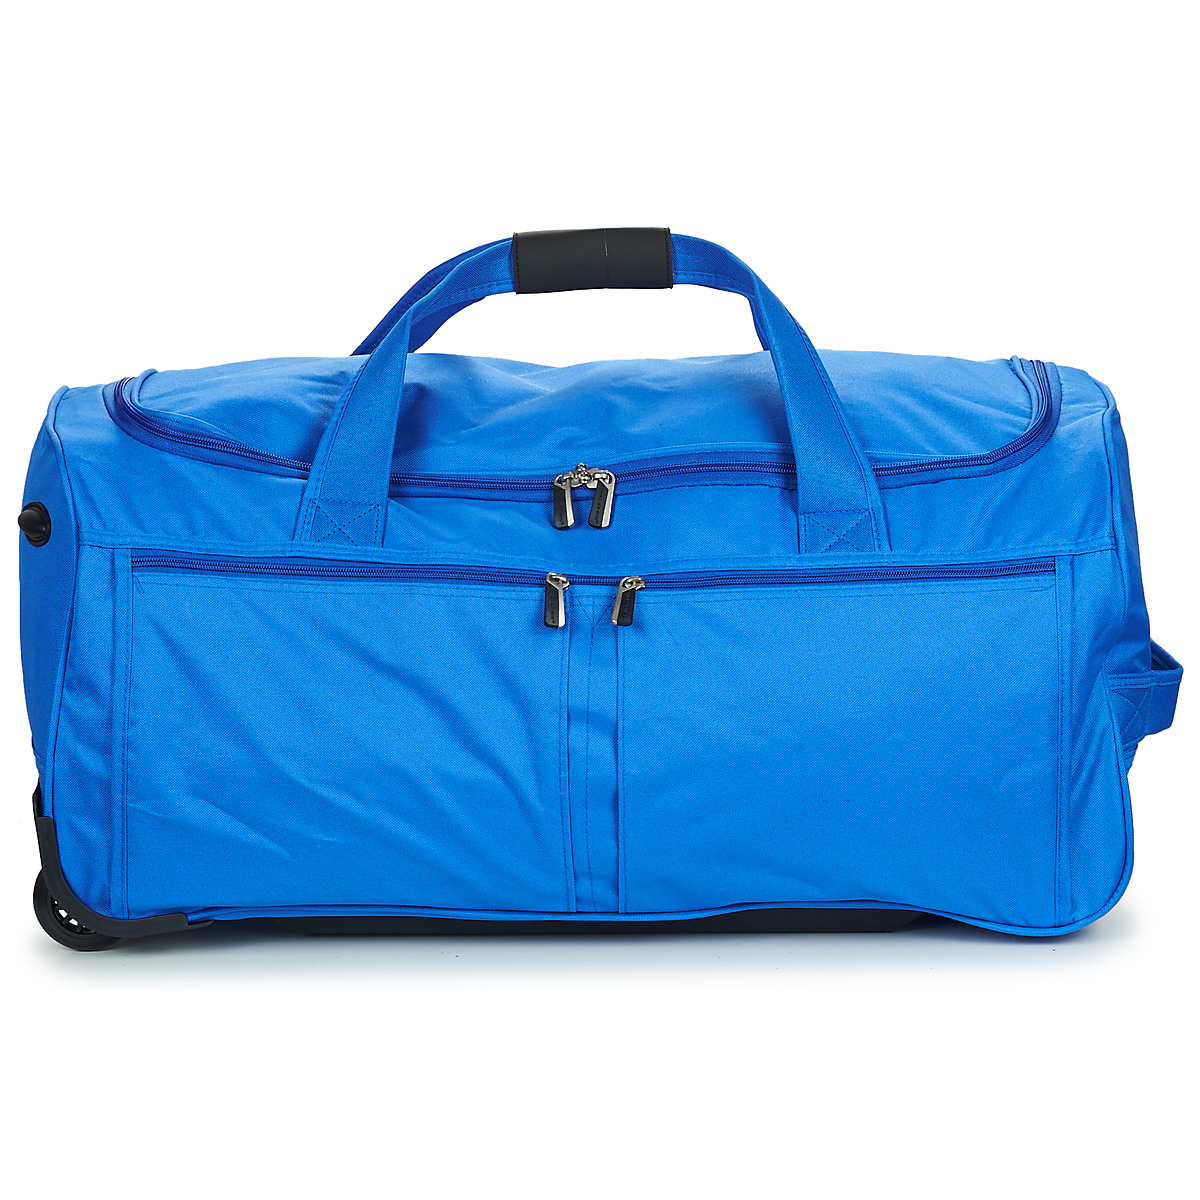 Βαλίτσα με ροδάκια David Jones B-888-1-BLUE